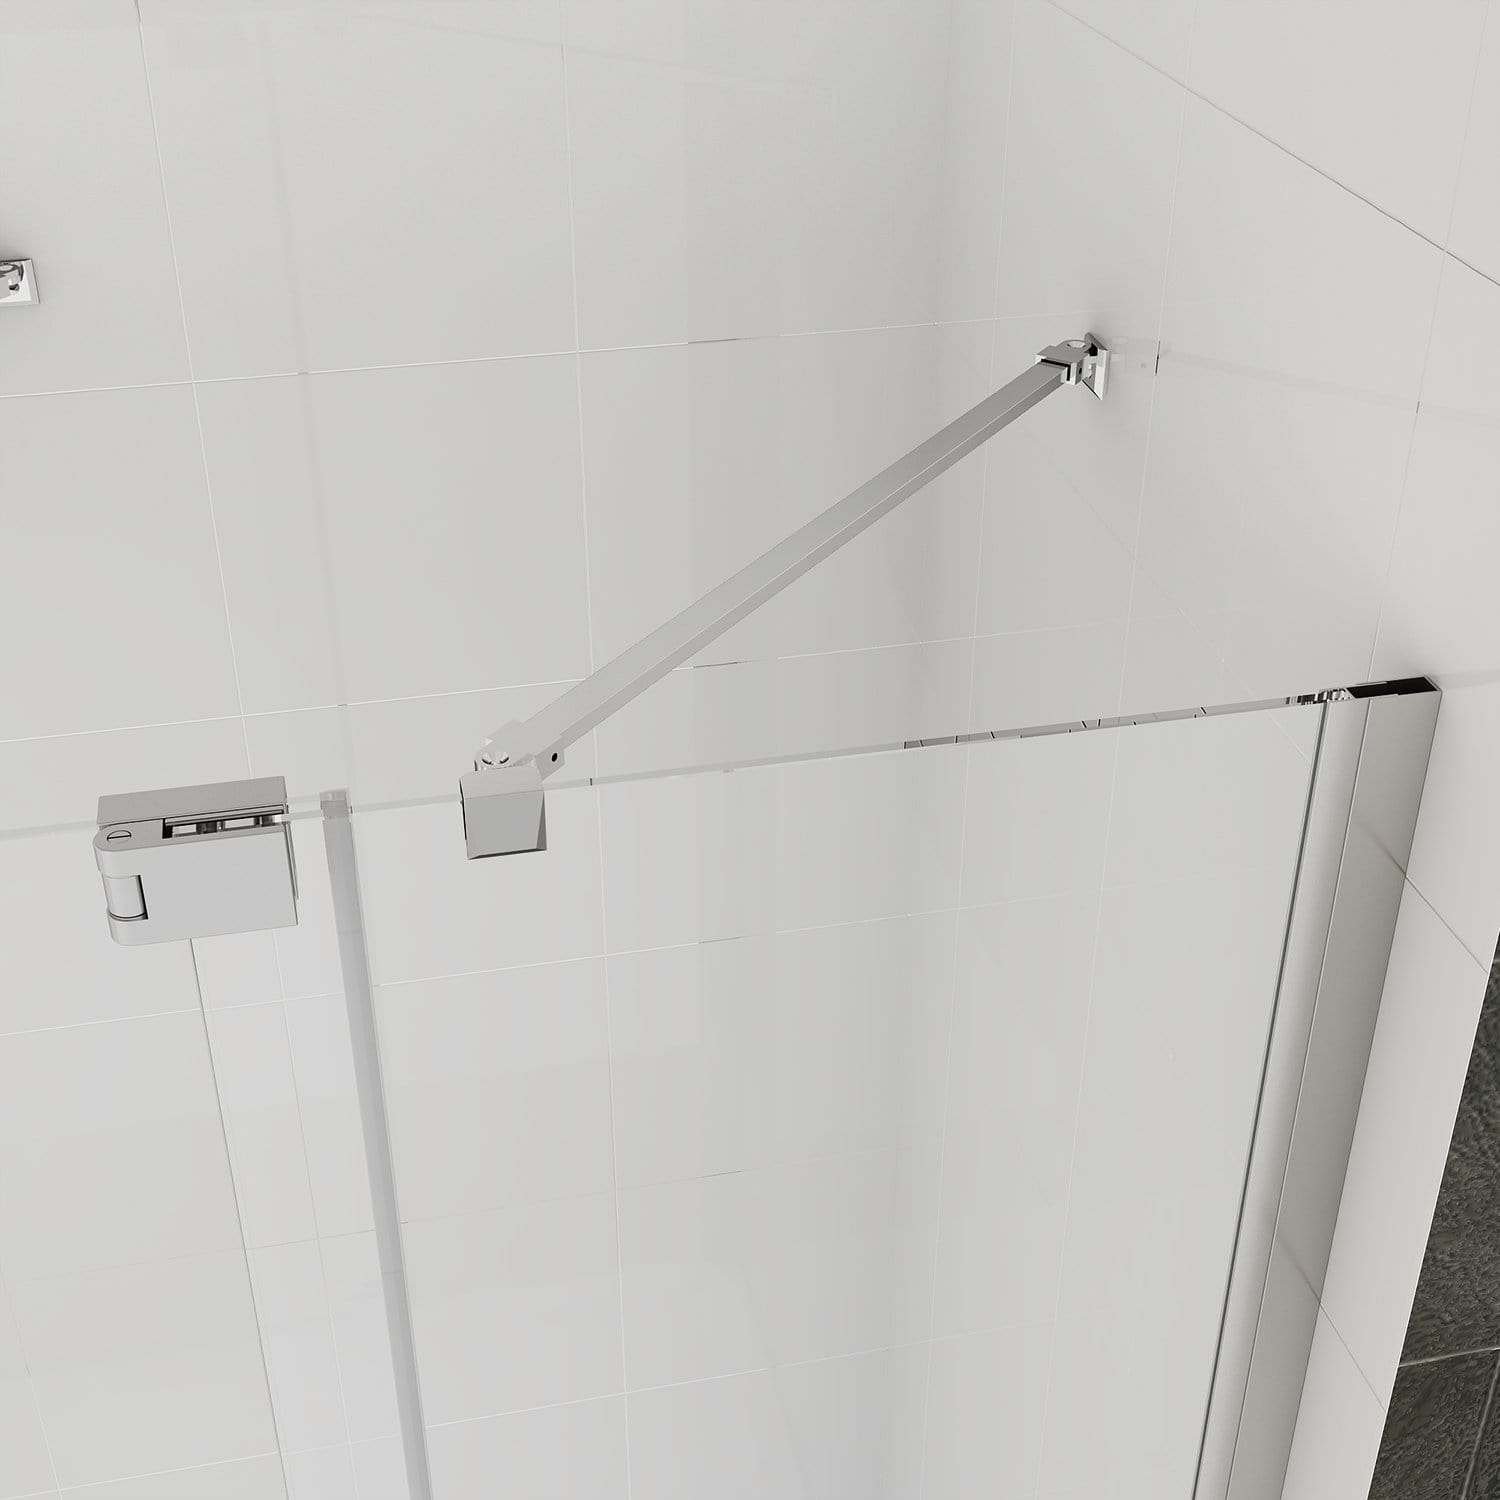 Fully Frameless Pivot Shower Screen Bathroom Cubical Safety Glass Support Bar - Elegantshowers